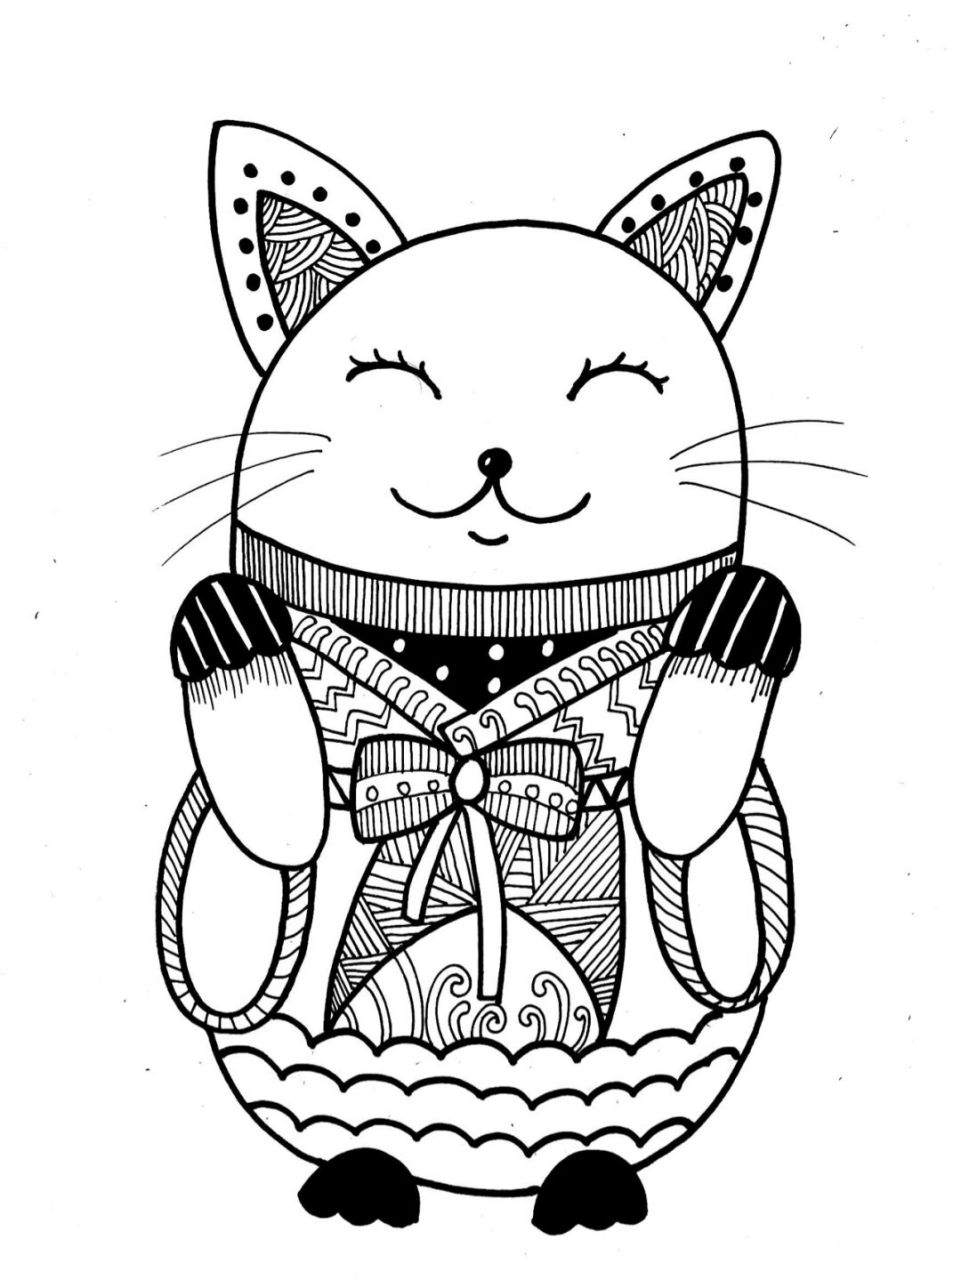 儿童线描画—猫 儿童线描93 材料:素描纸,勾线笔,马克笔 背景颜色